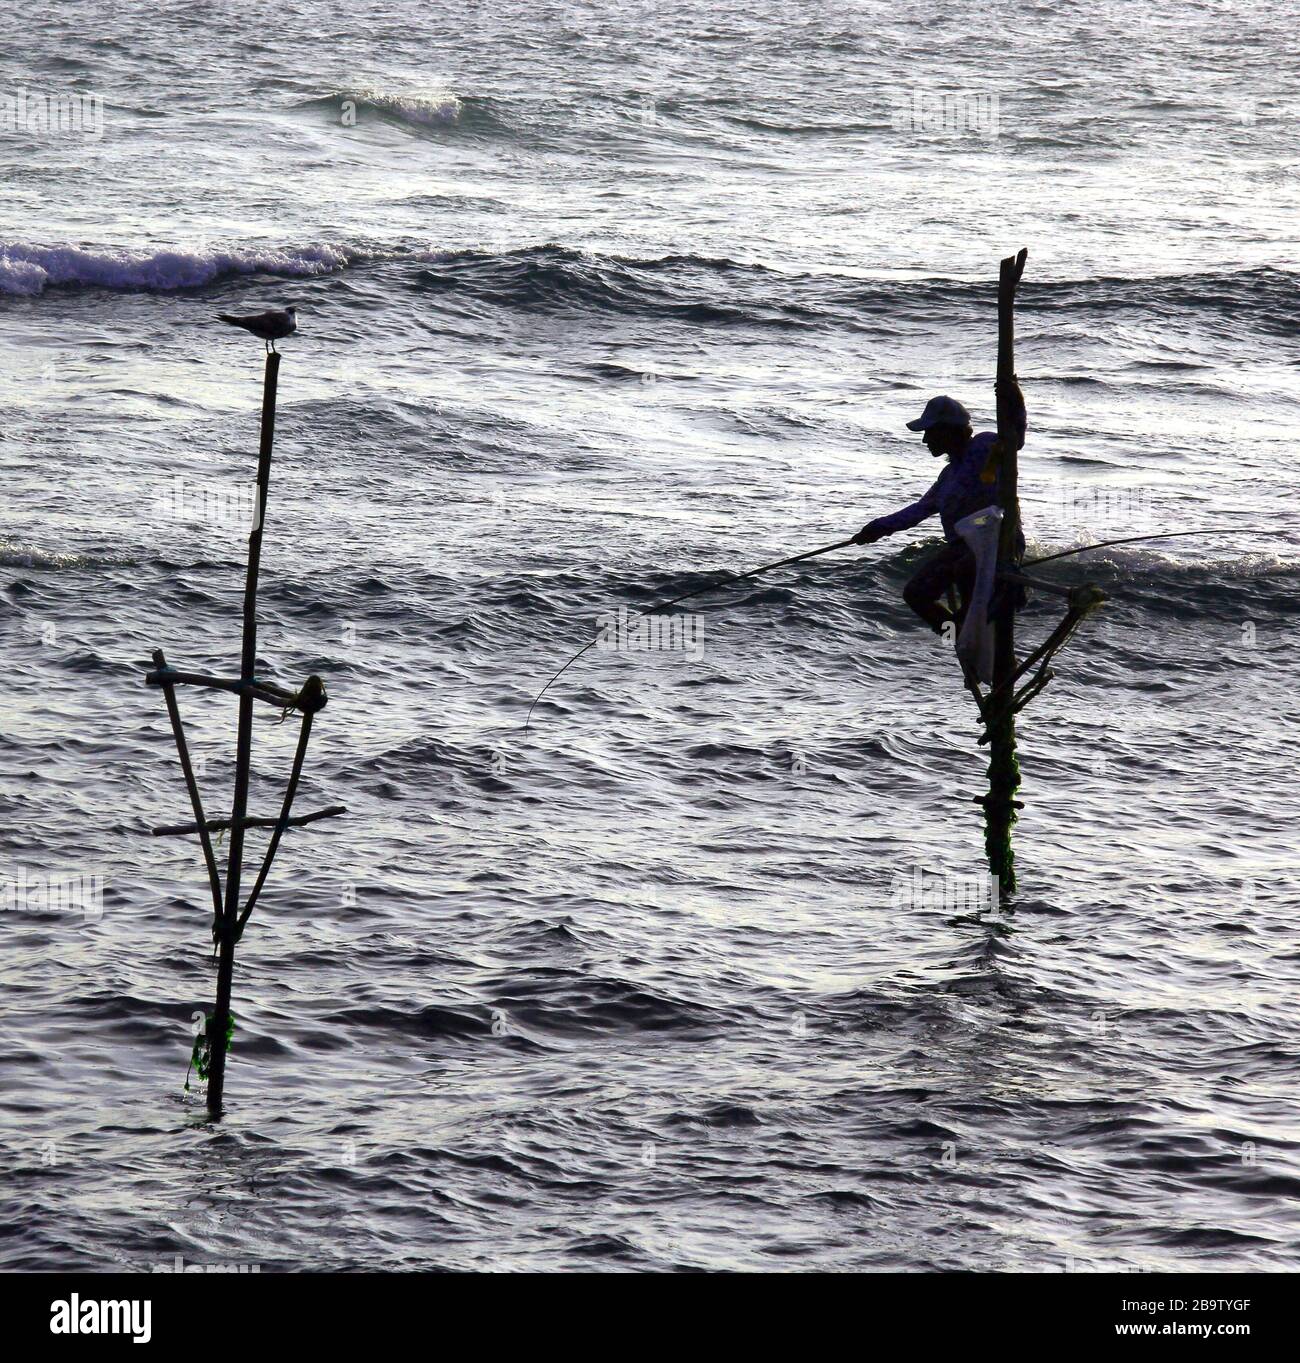 Les pêcheurs sur échasses de Sri Lanka Banque D'Images